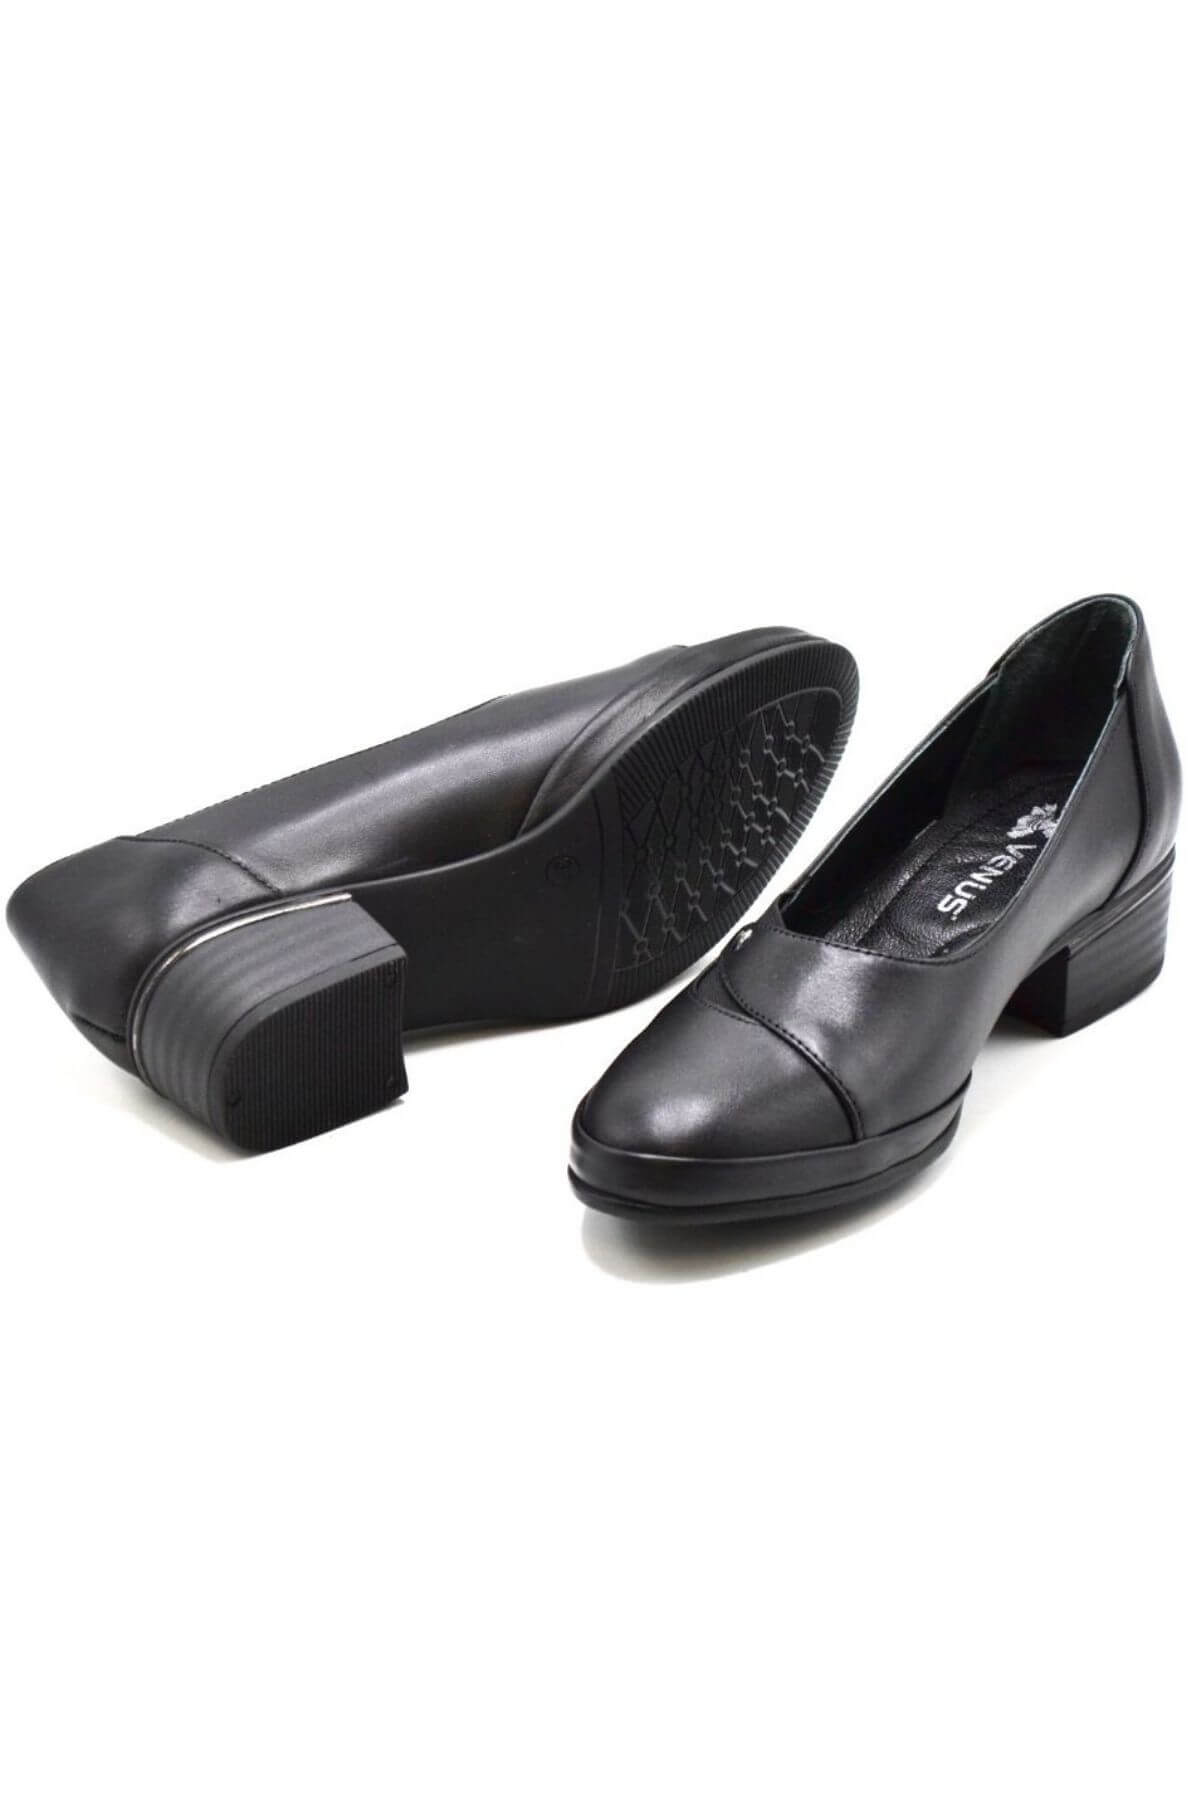 Kadın Topuklu Deri Ayakkabı Siyah 2312515K